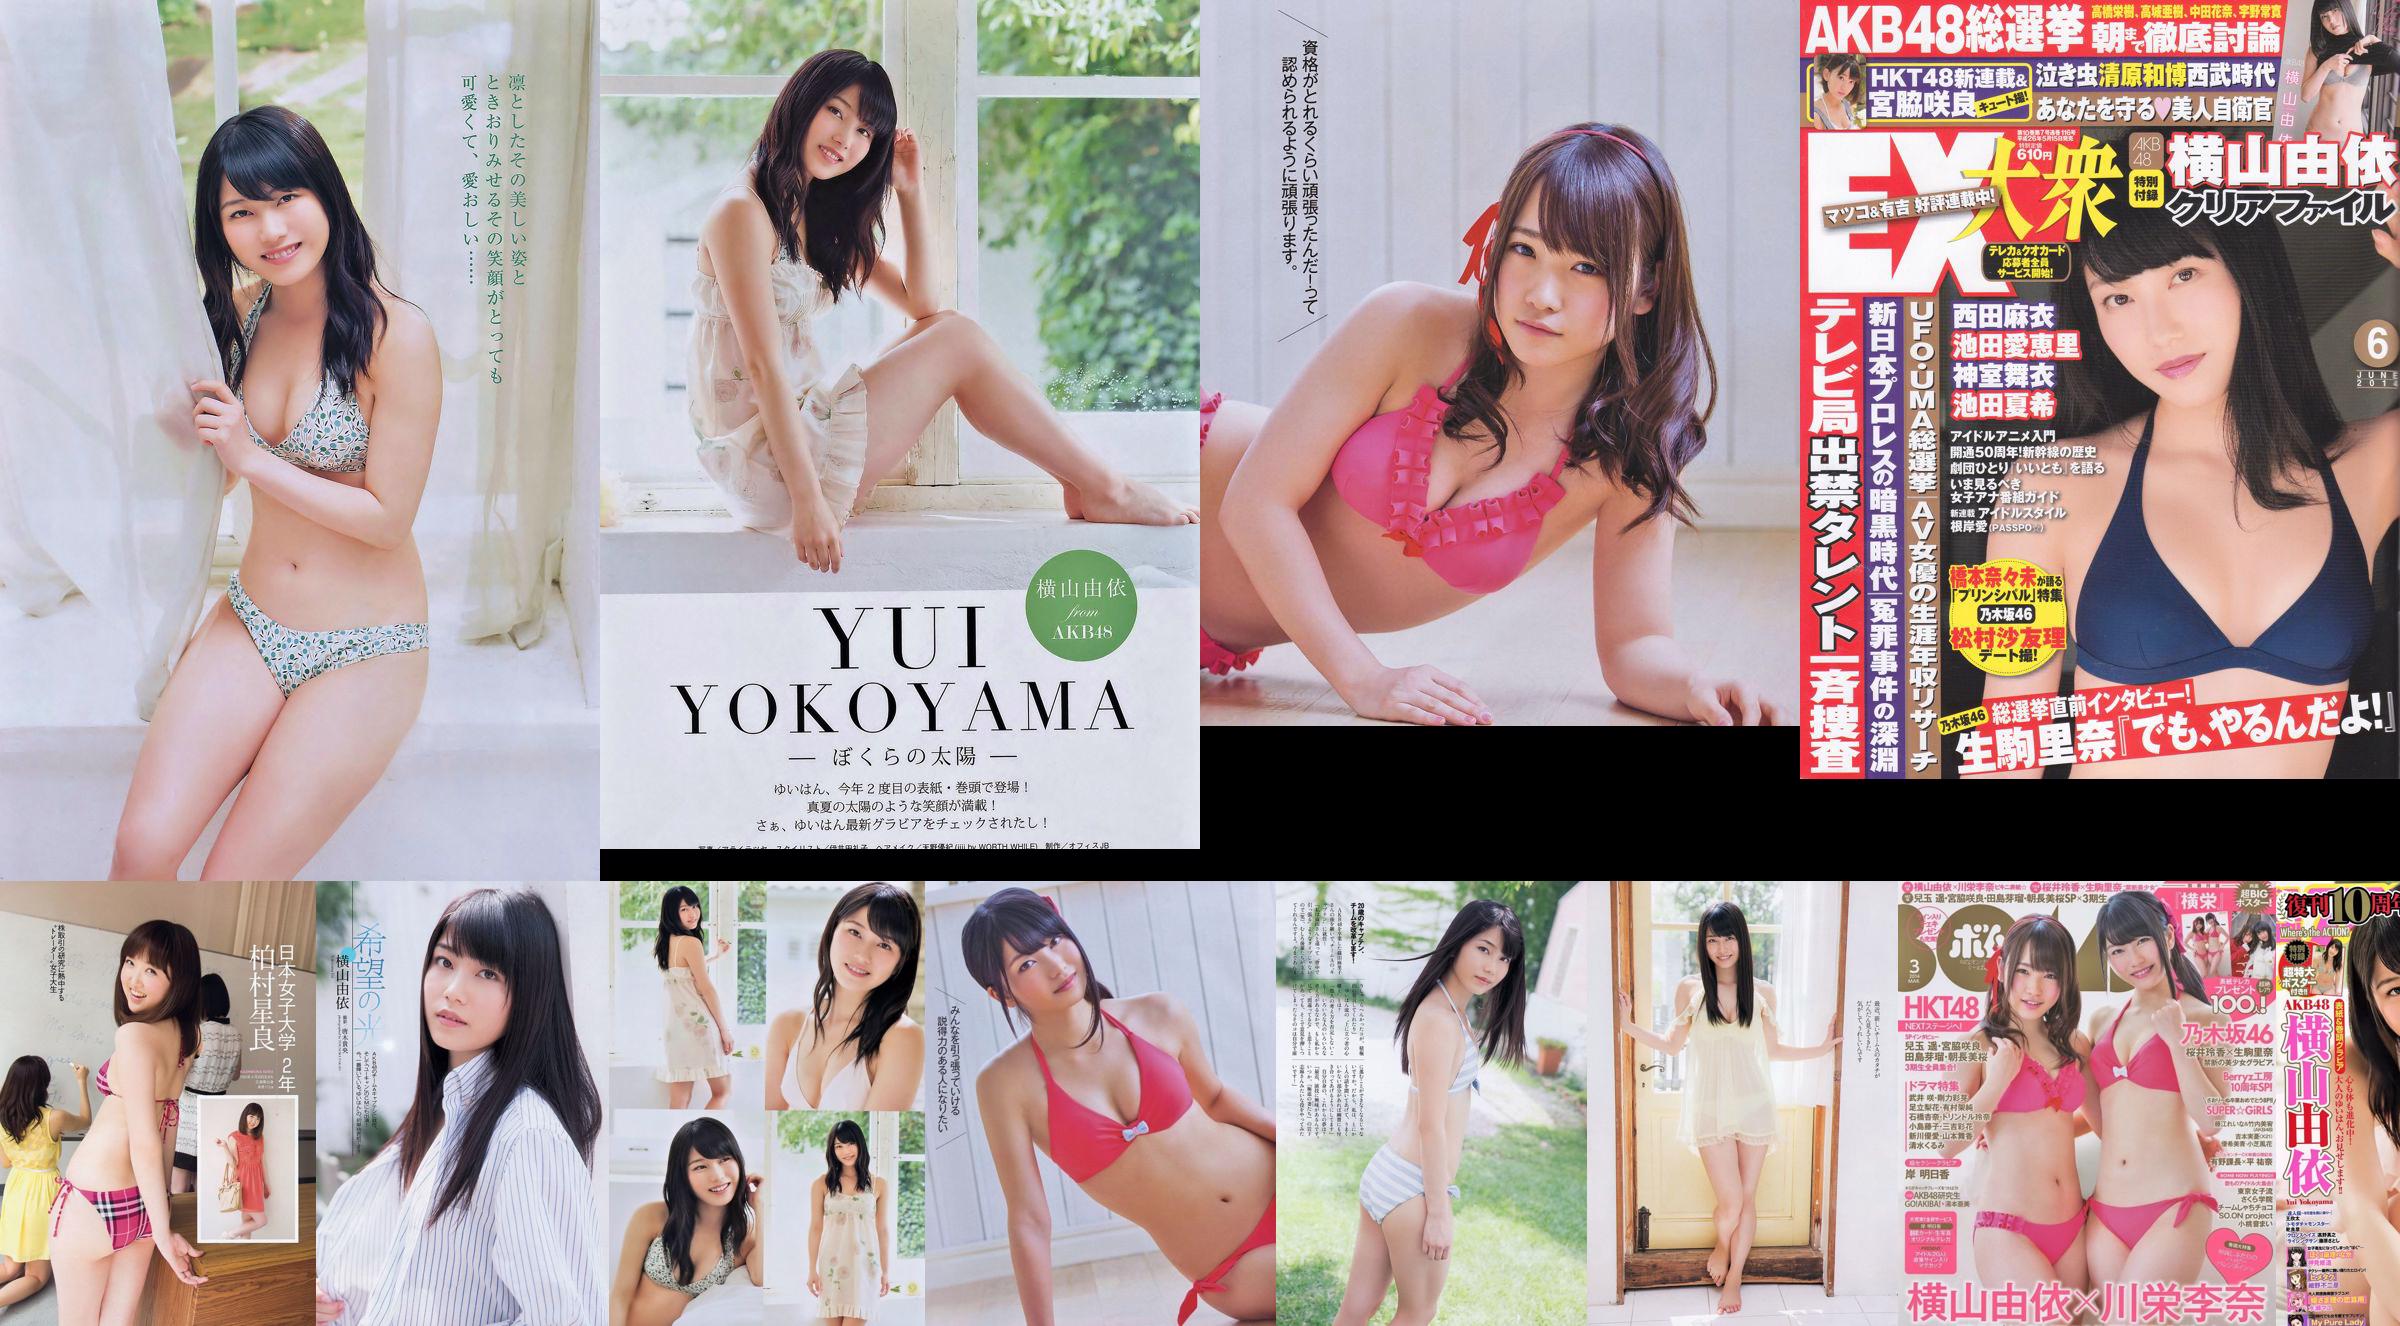 Yui Yokoyama Nozomi Sasaki Rina Koike Asuka Kuramochi Miwako Kakei Risa Yoshiki Ruri Shinato [wekelijkse Playboy] 2013 nr 38 foto No.5d4525 Pagina 1